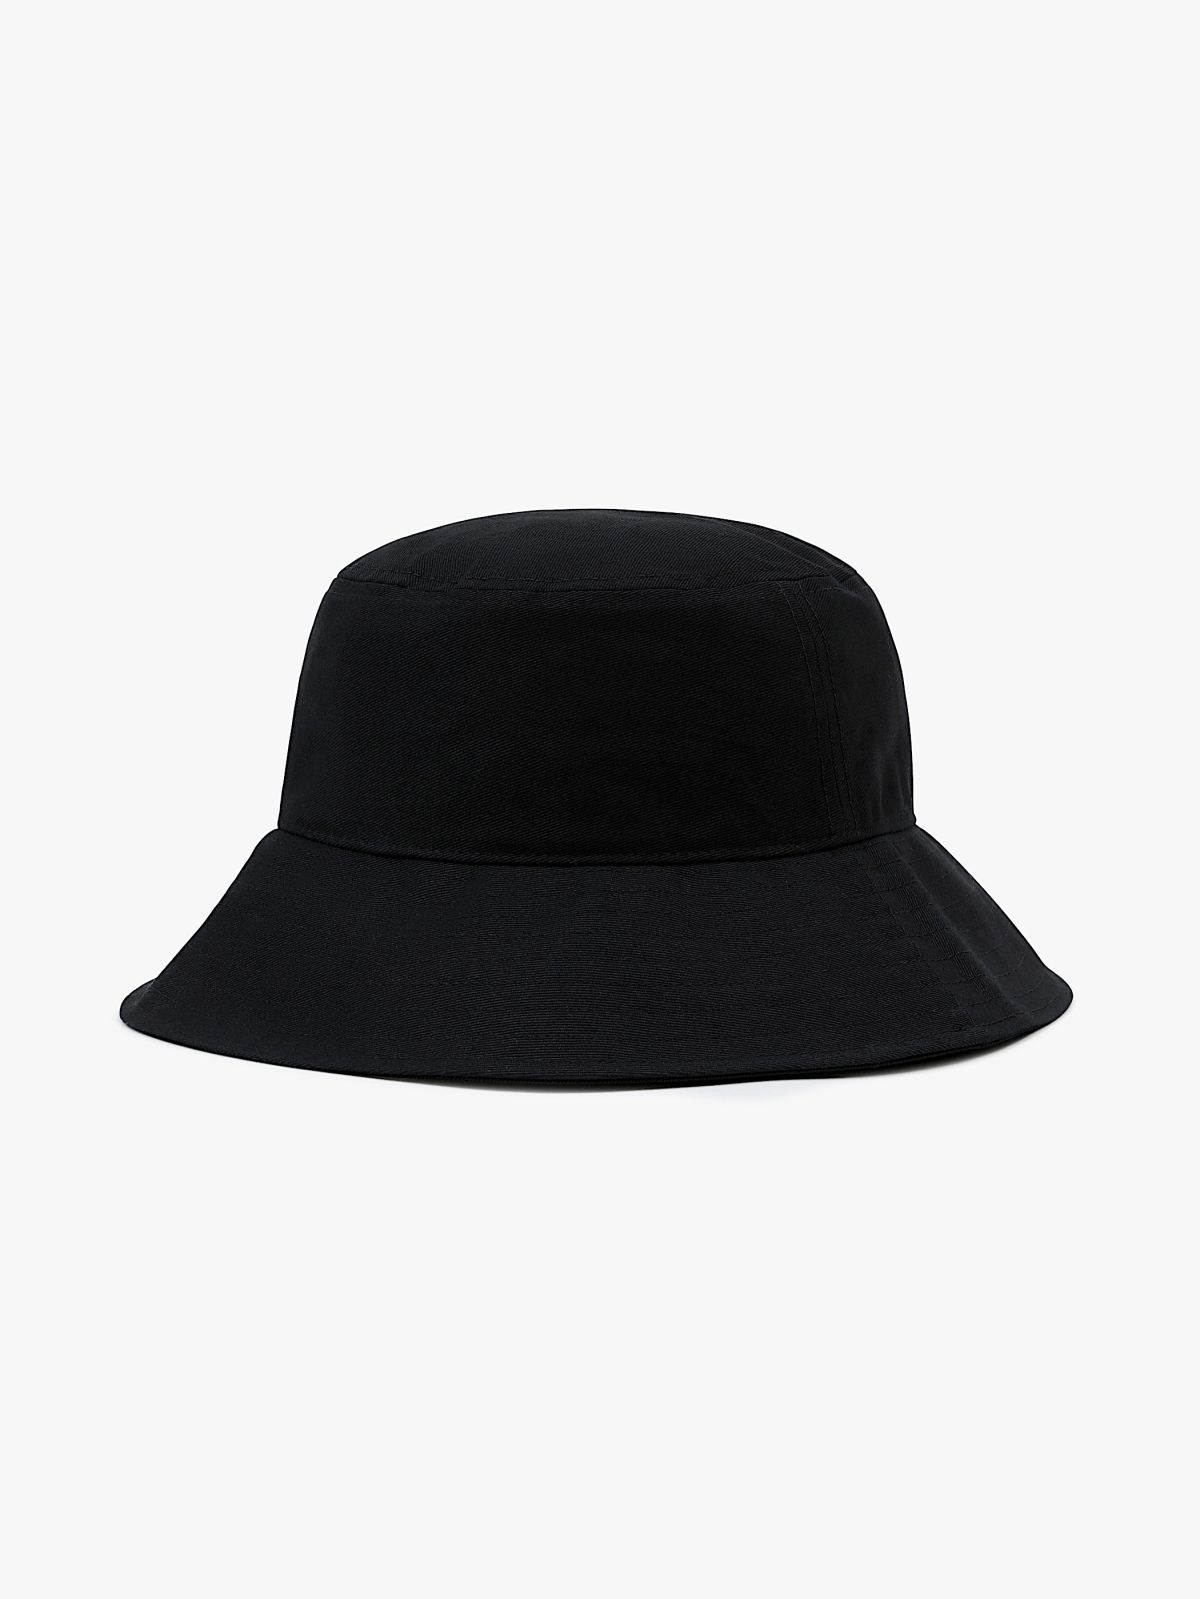  כובע באקט עם לוגו / נשים של VANS